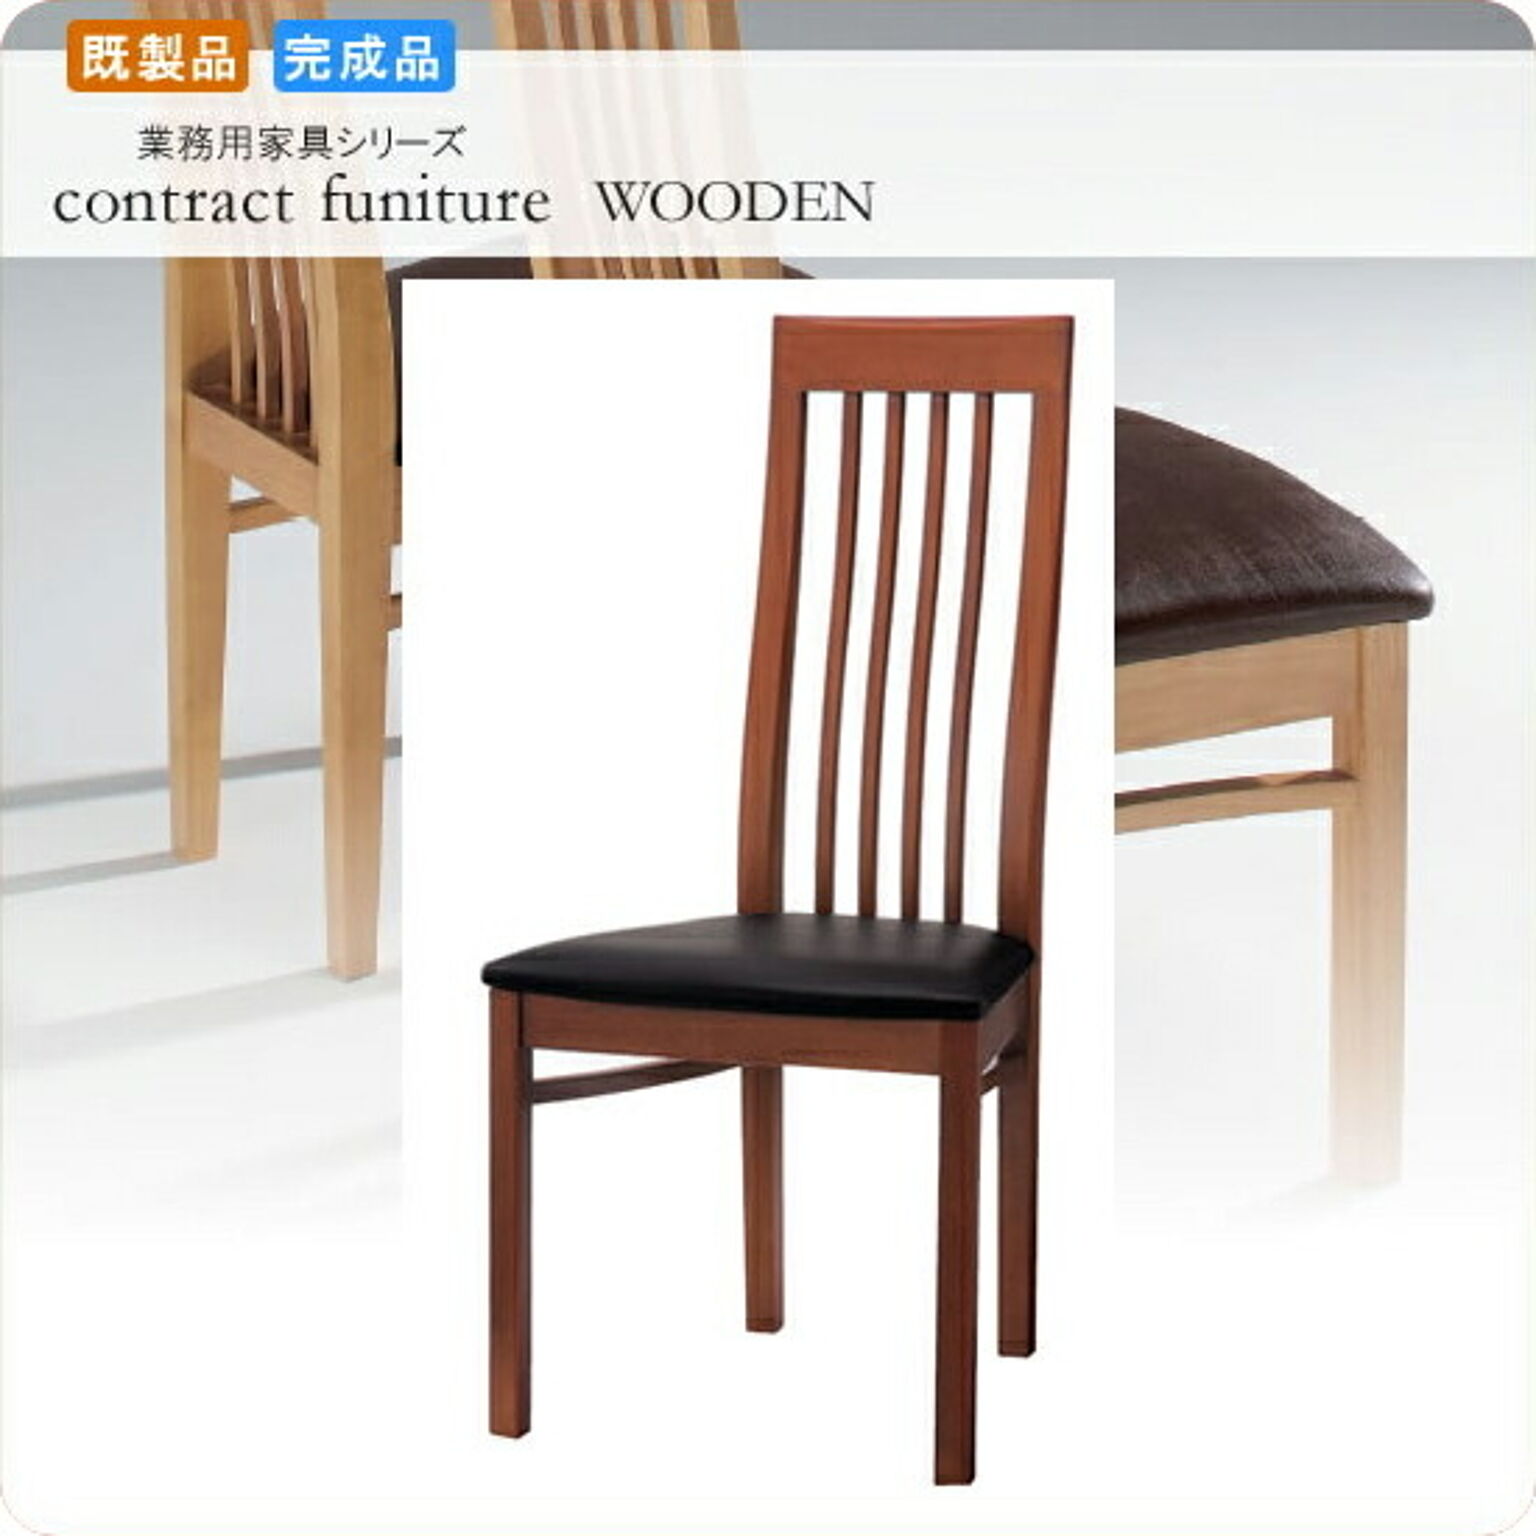 ダイニングチェアー 椅子 イス モンターニア ブラウン 業務用家具シリーズ WOODEN（ウッド）  店舗 施設 コントラクト